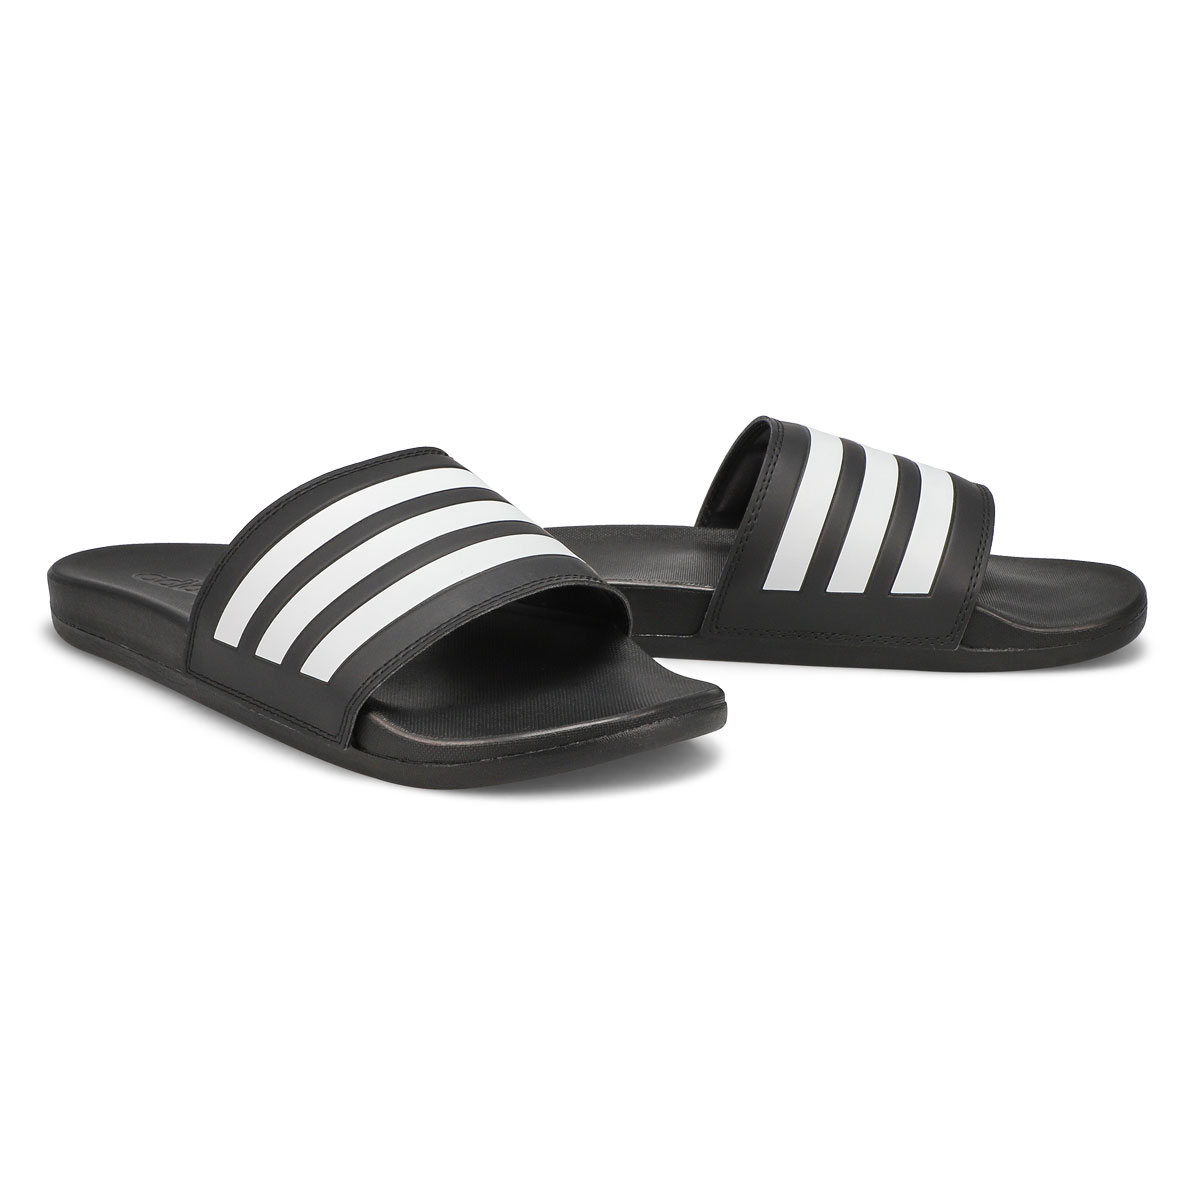 Mens' Adilette Comfort Sandal - Black/White